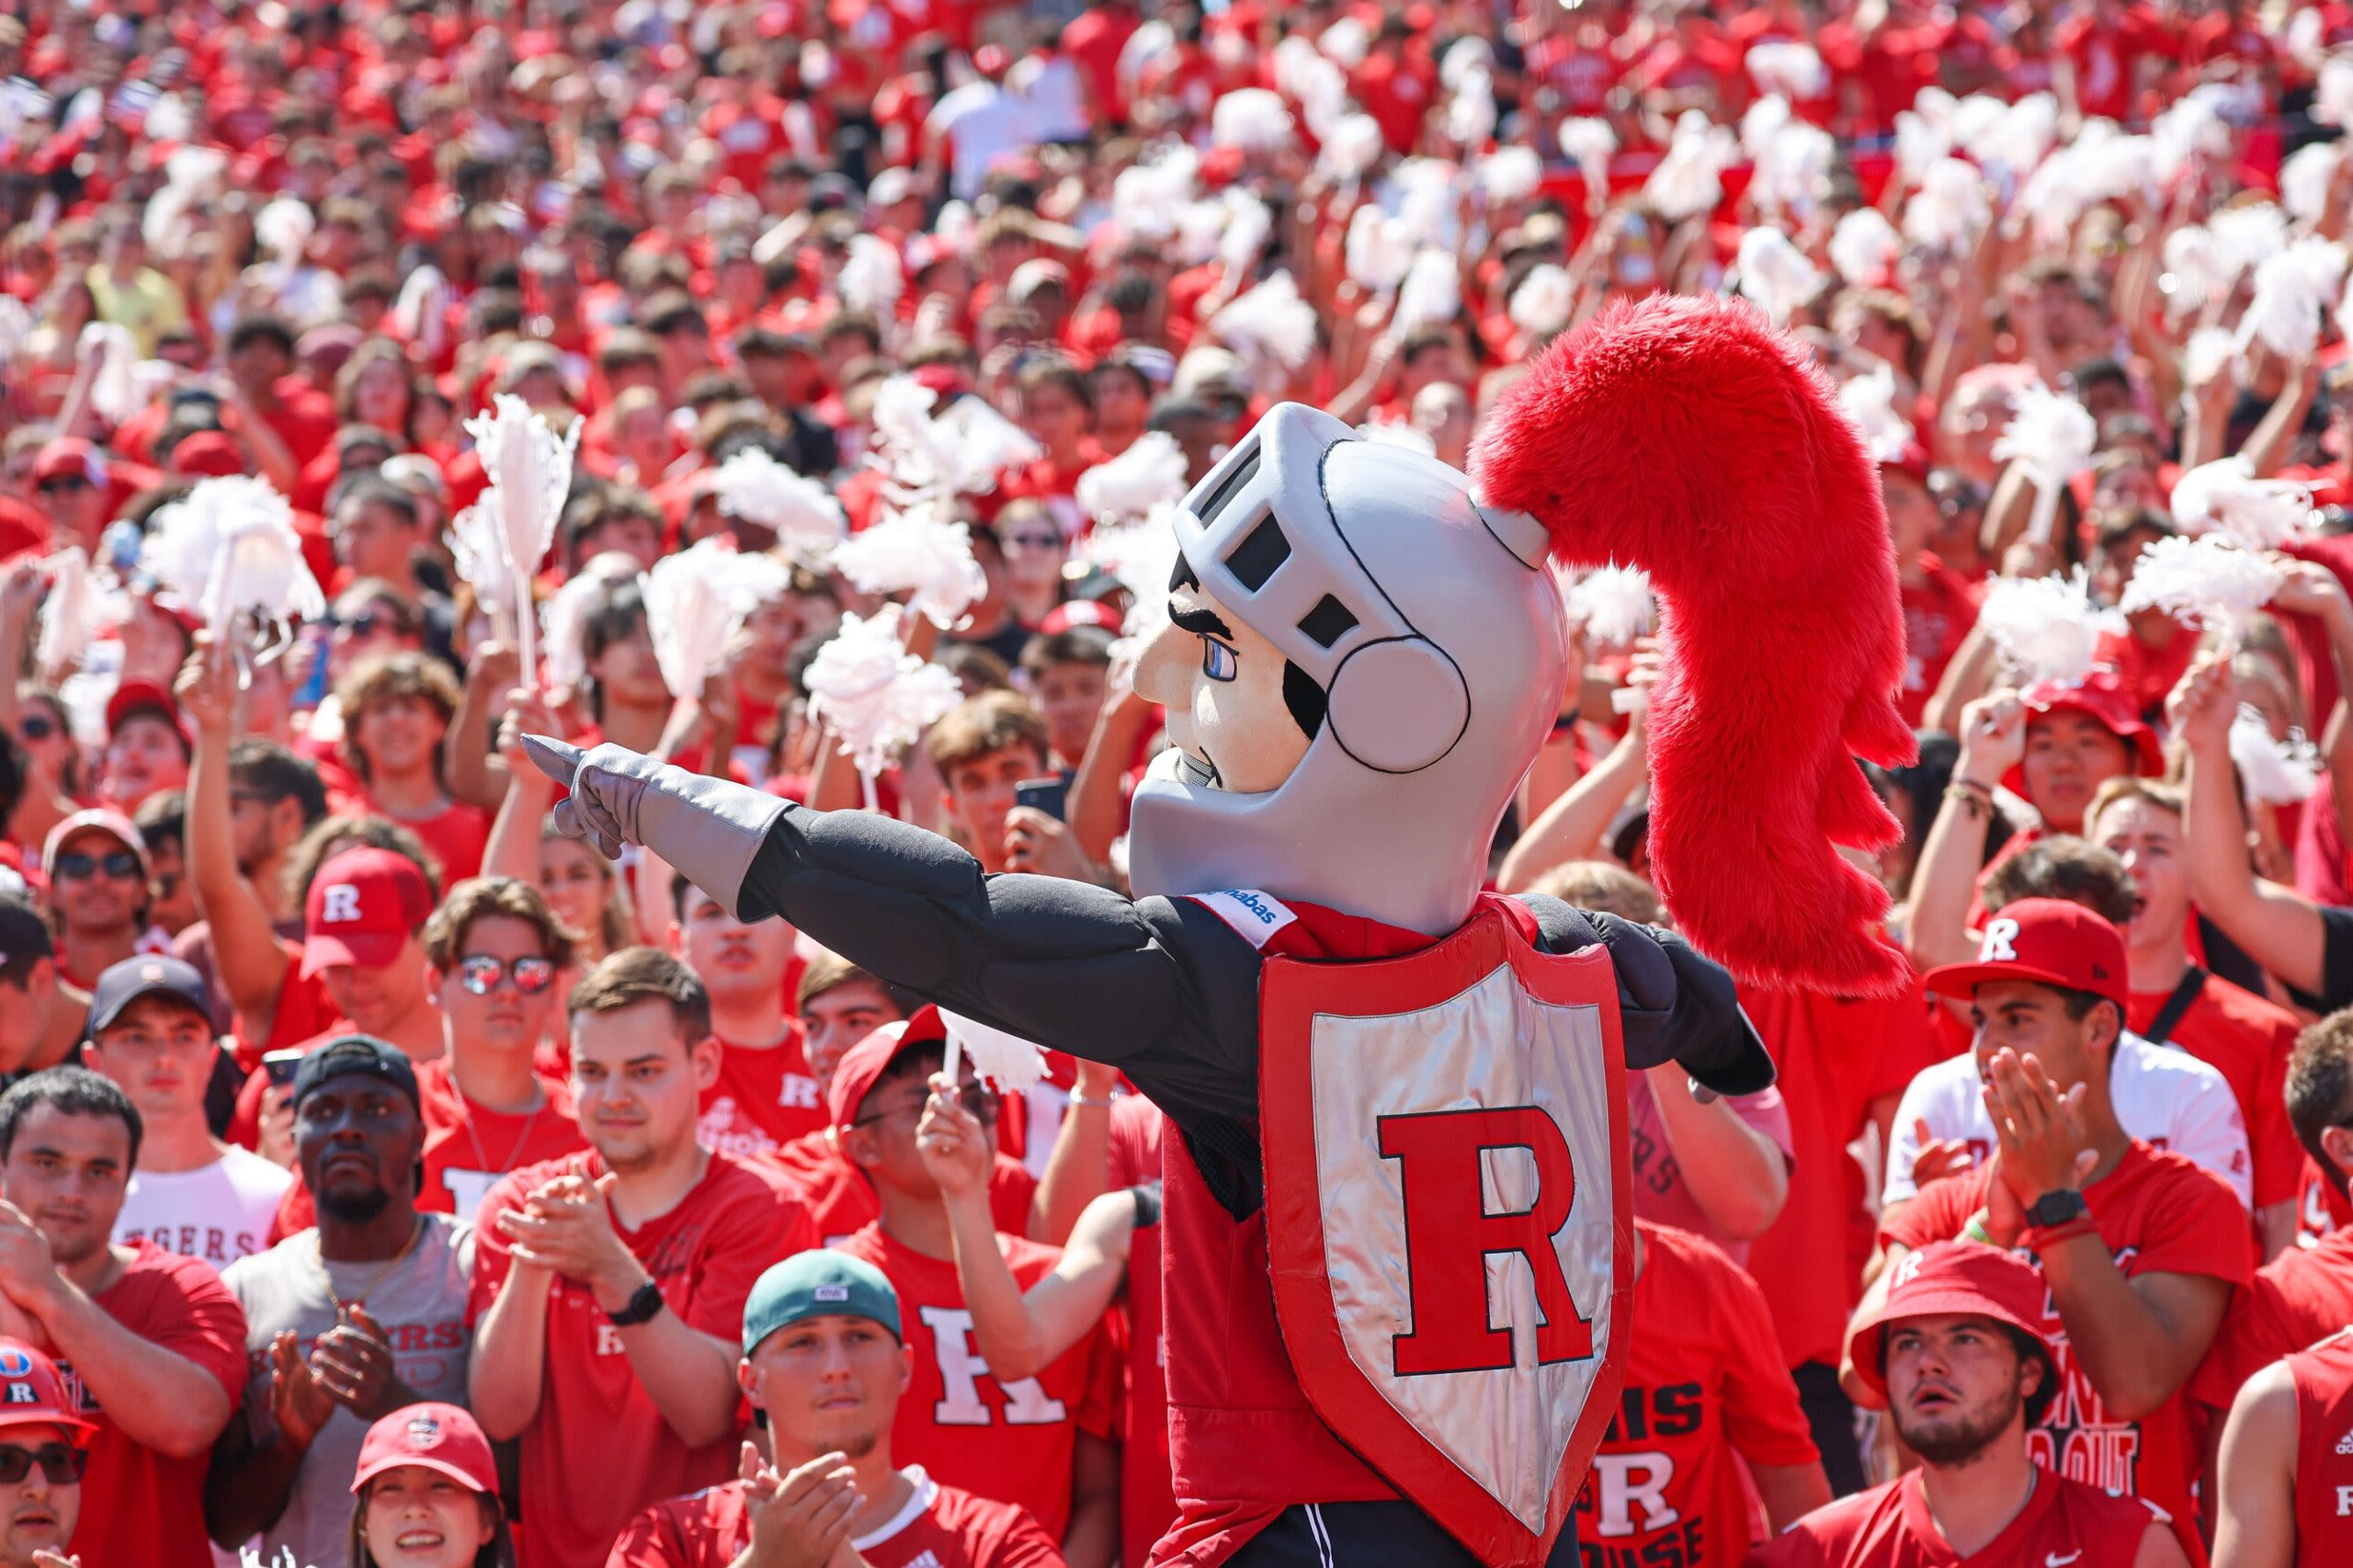 Rutgers lacrosse senior Ross Scott named honorable mention All-American